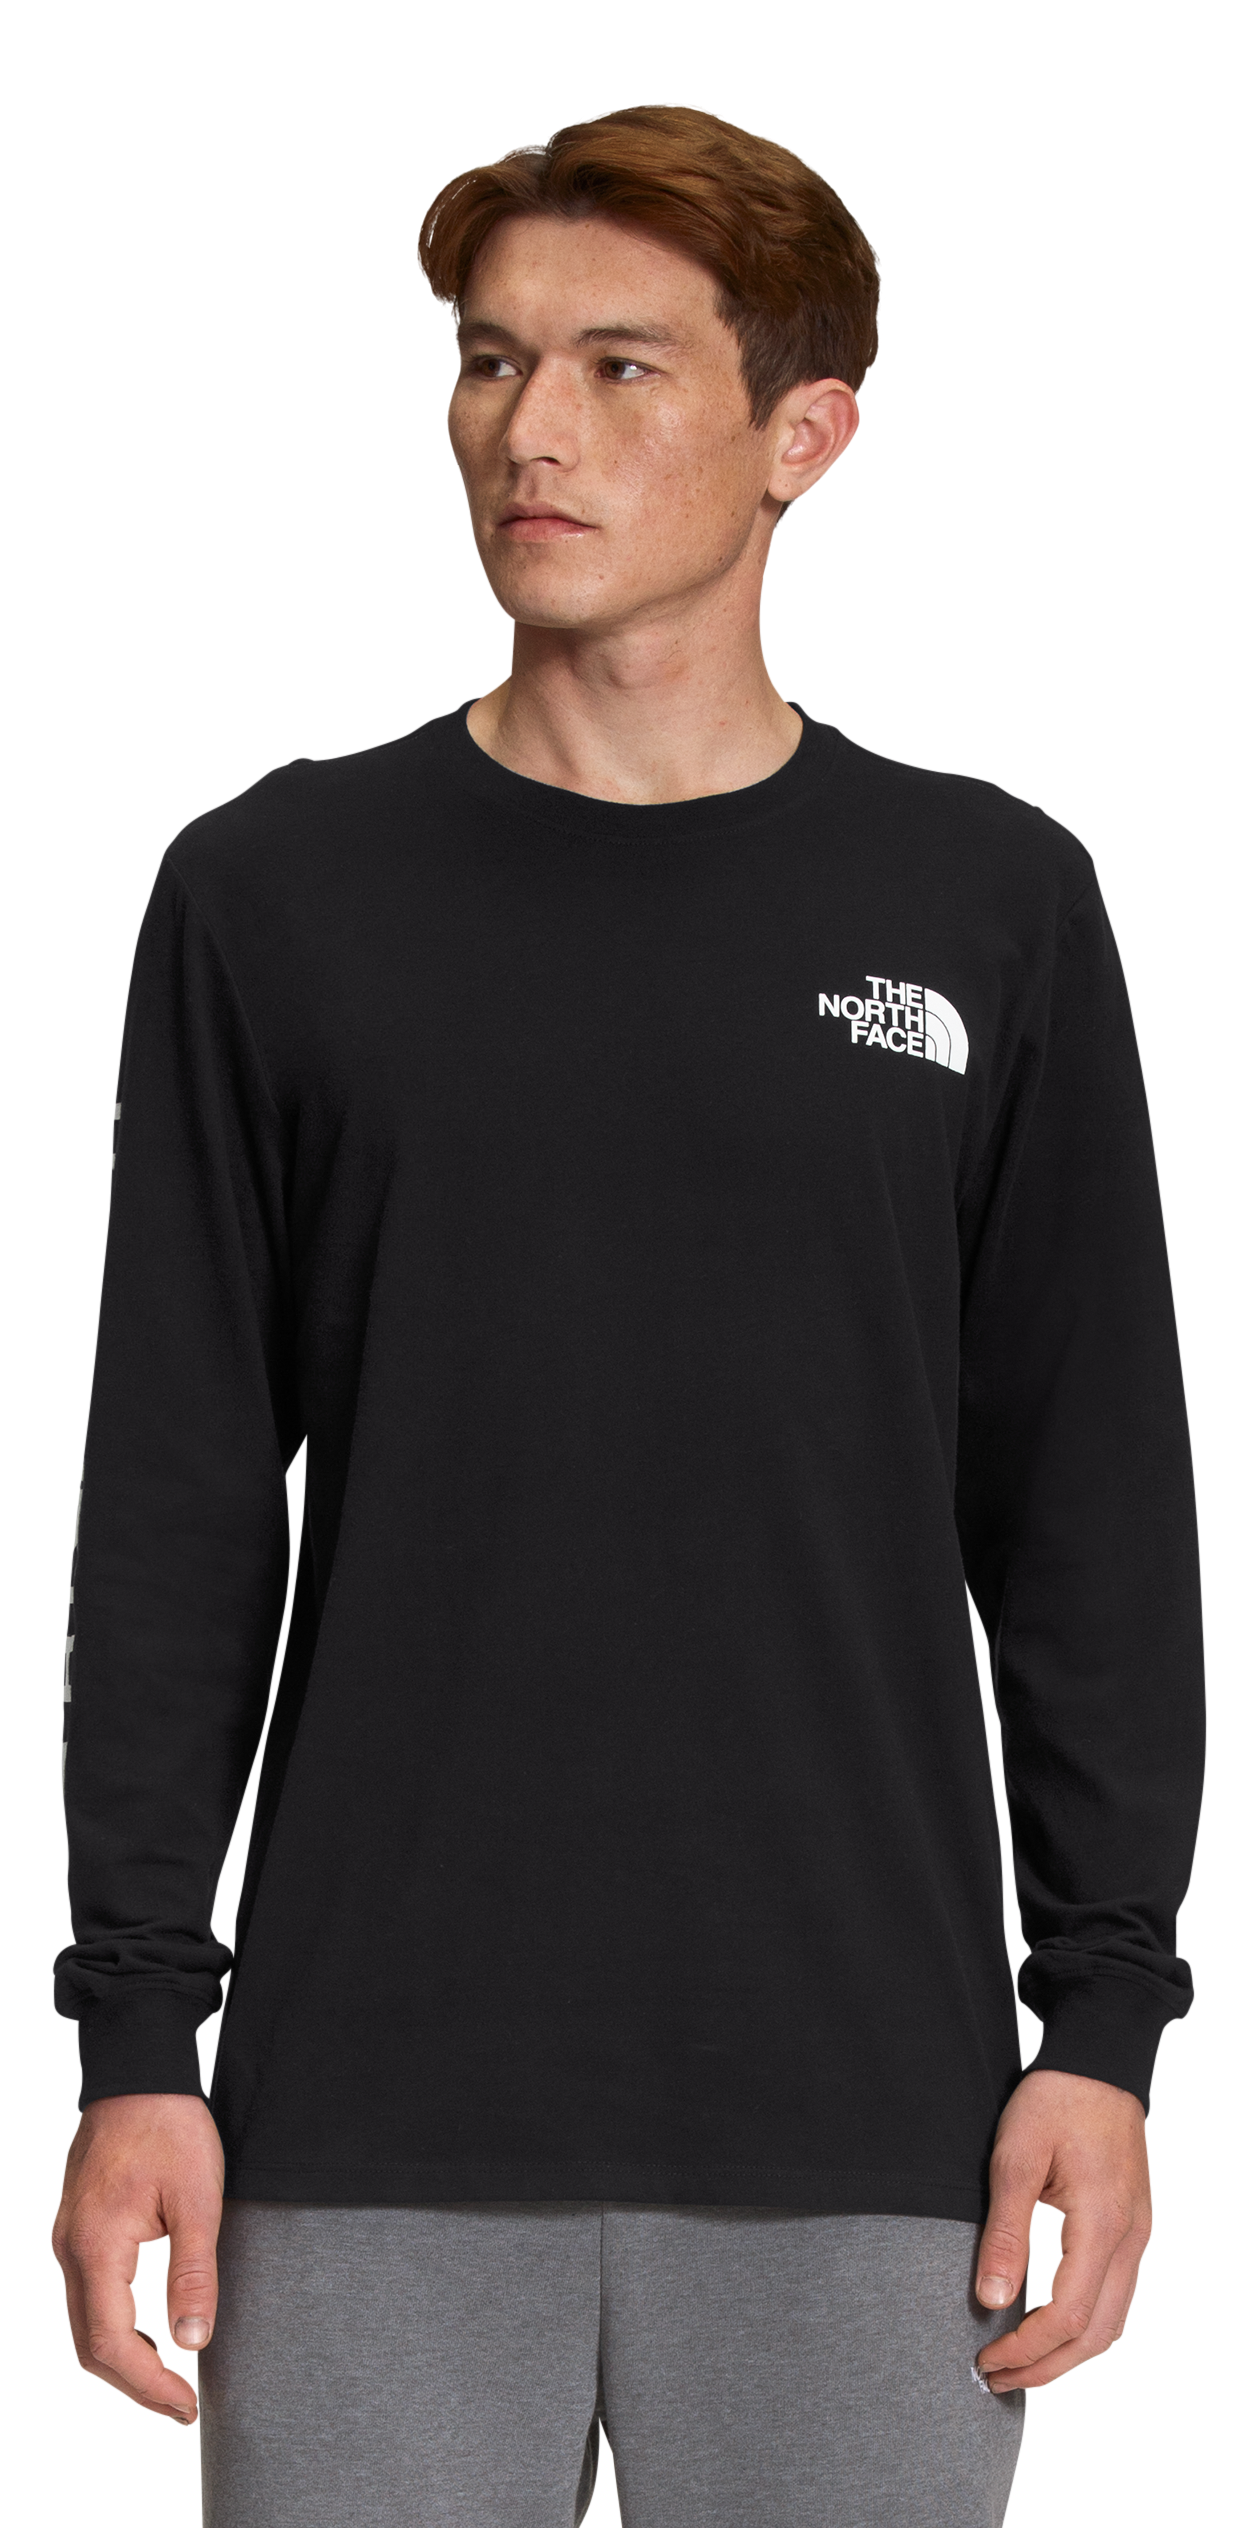 The North Face TNF Sleeve Hit Long-Sleeve T-Shirt for Men - TNF Black/TNF White - M